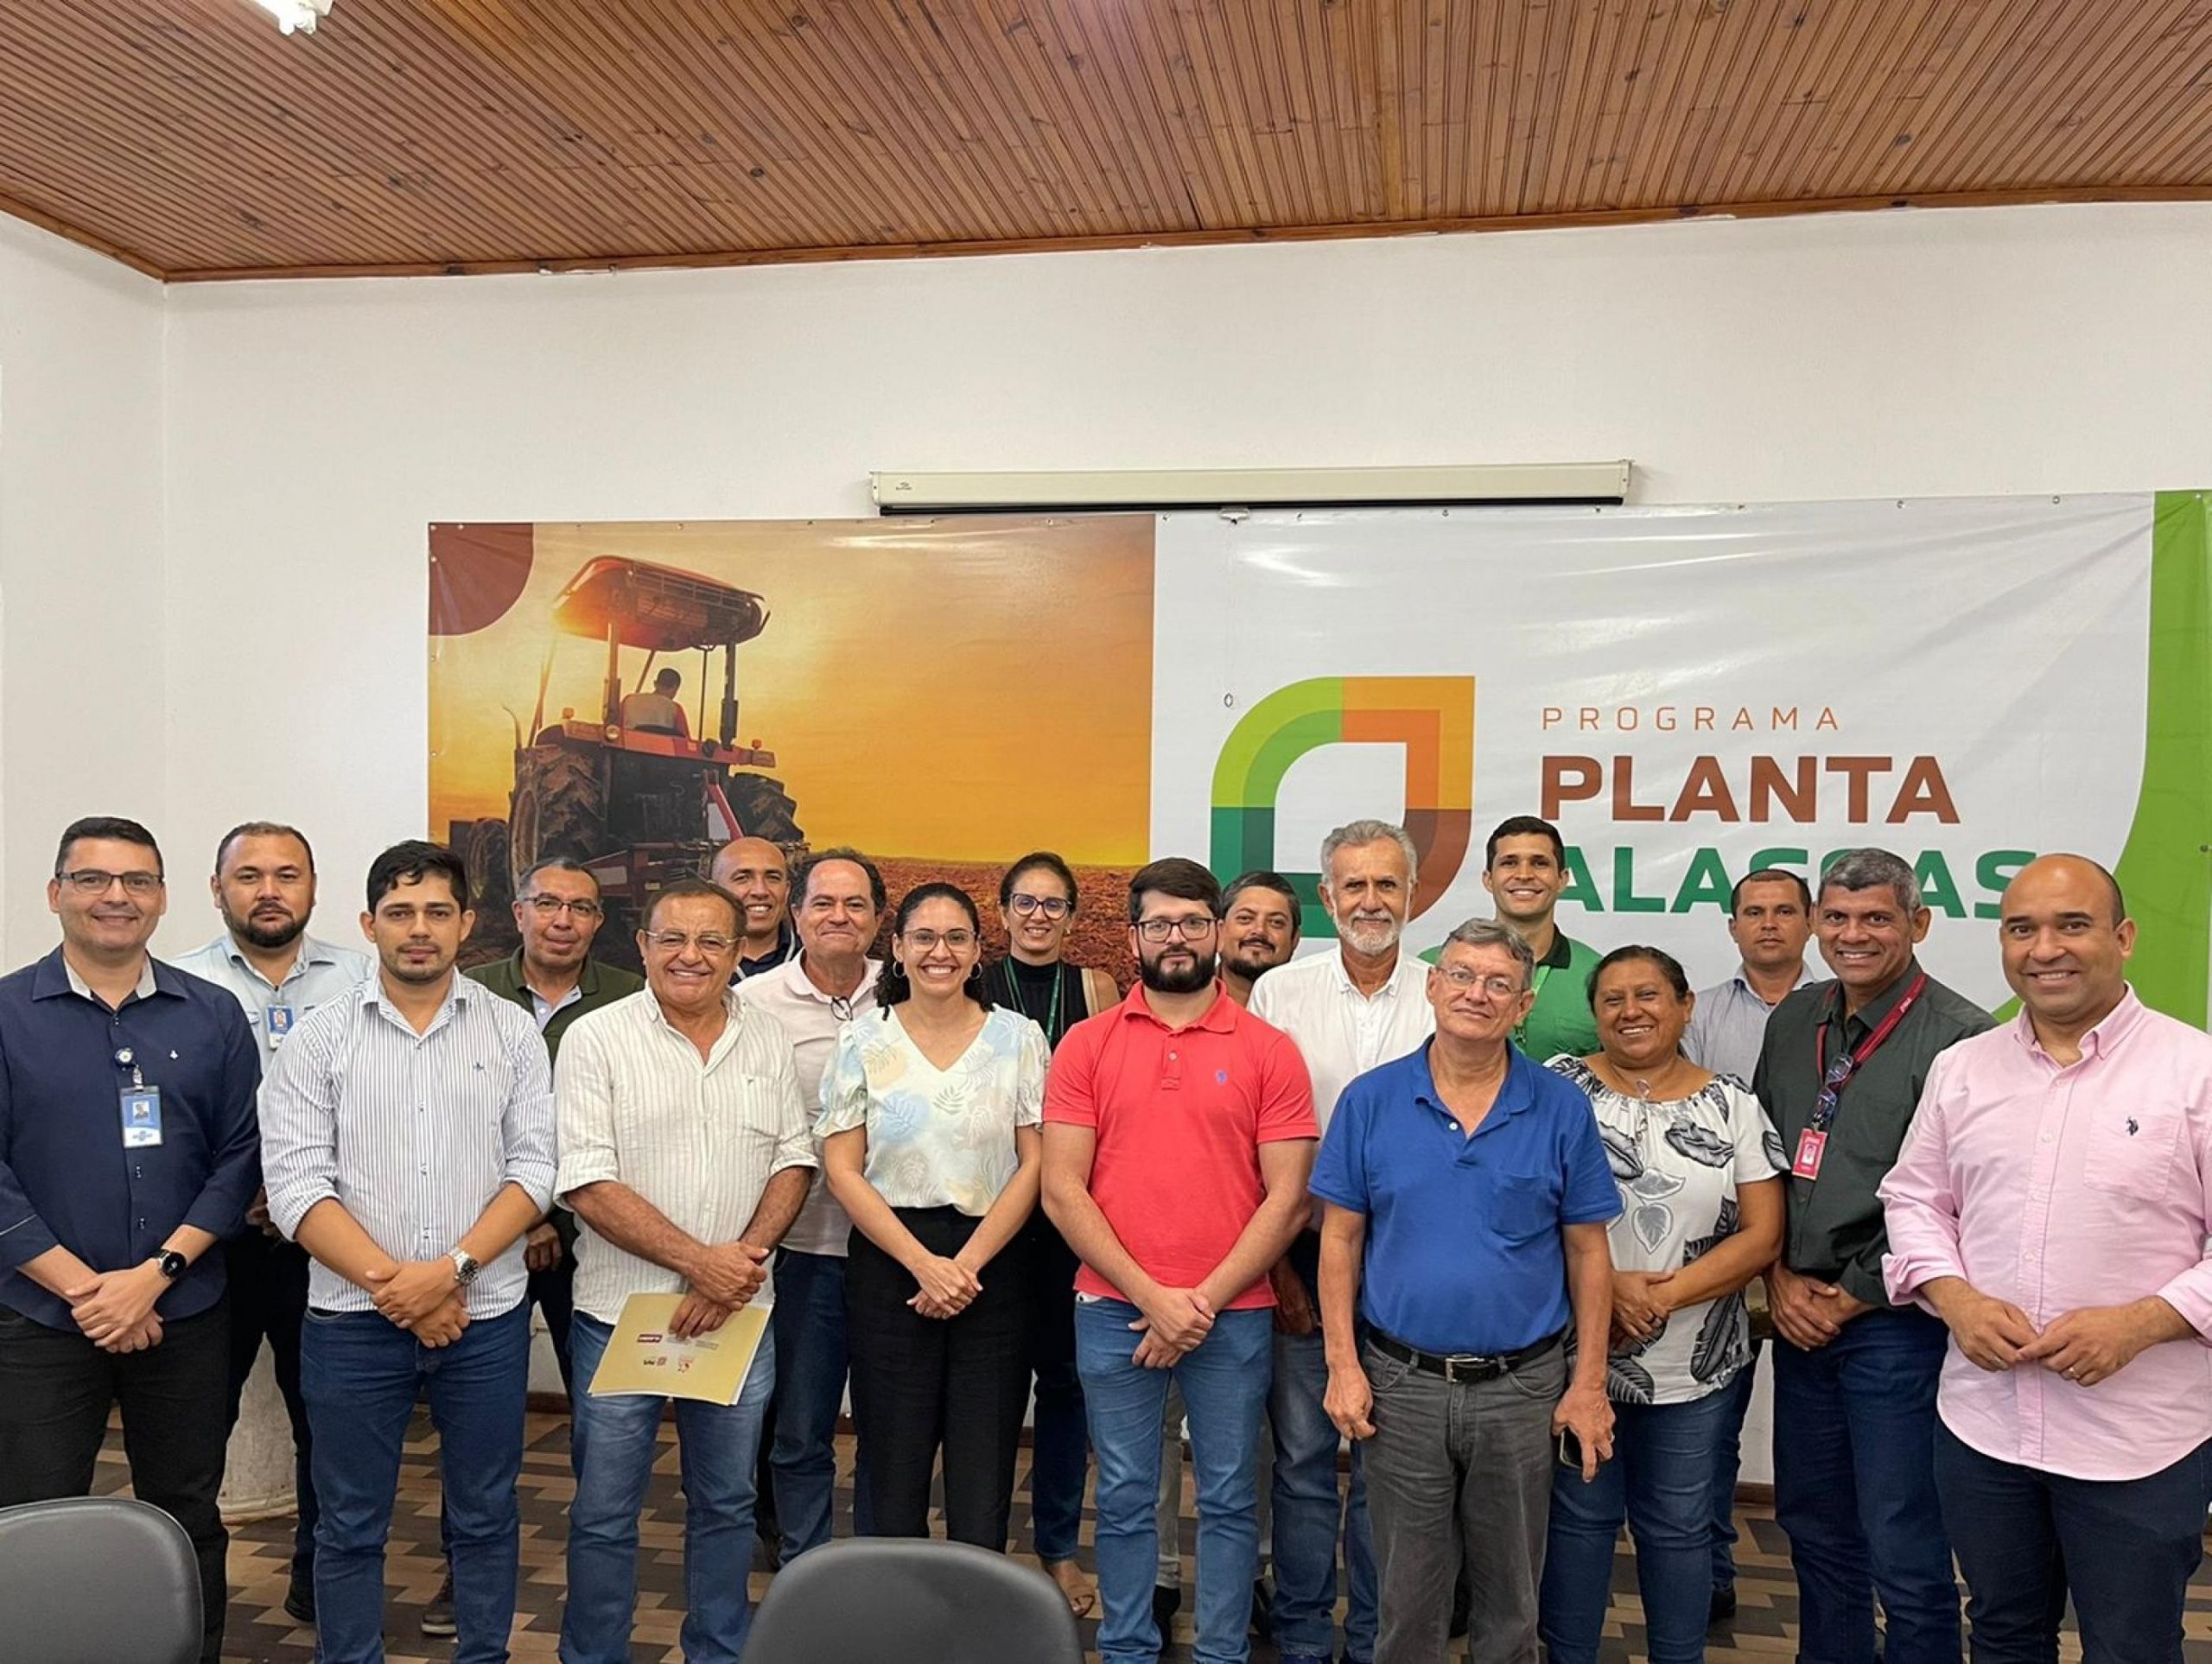 Alagoas possui mais de 20 mil estabelecimentos agropecuários produzindo mandioca